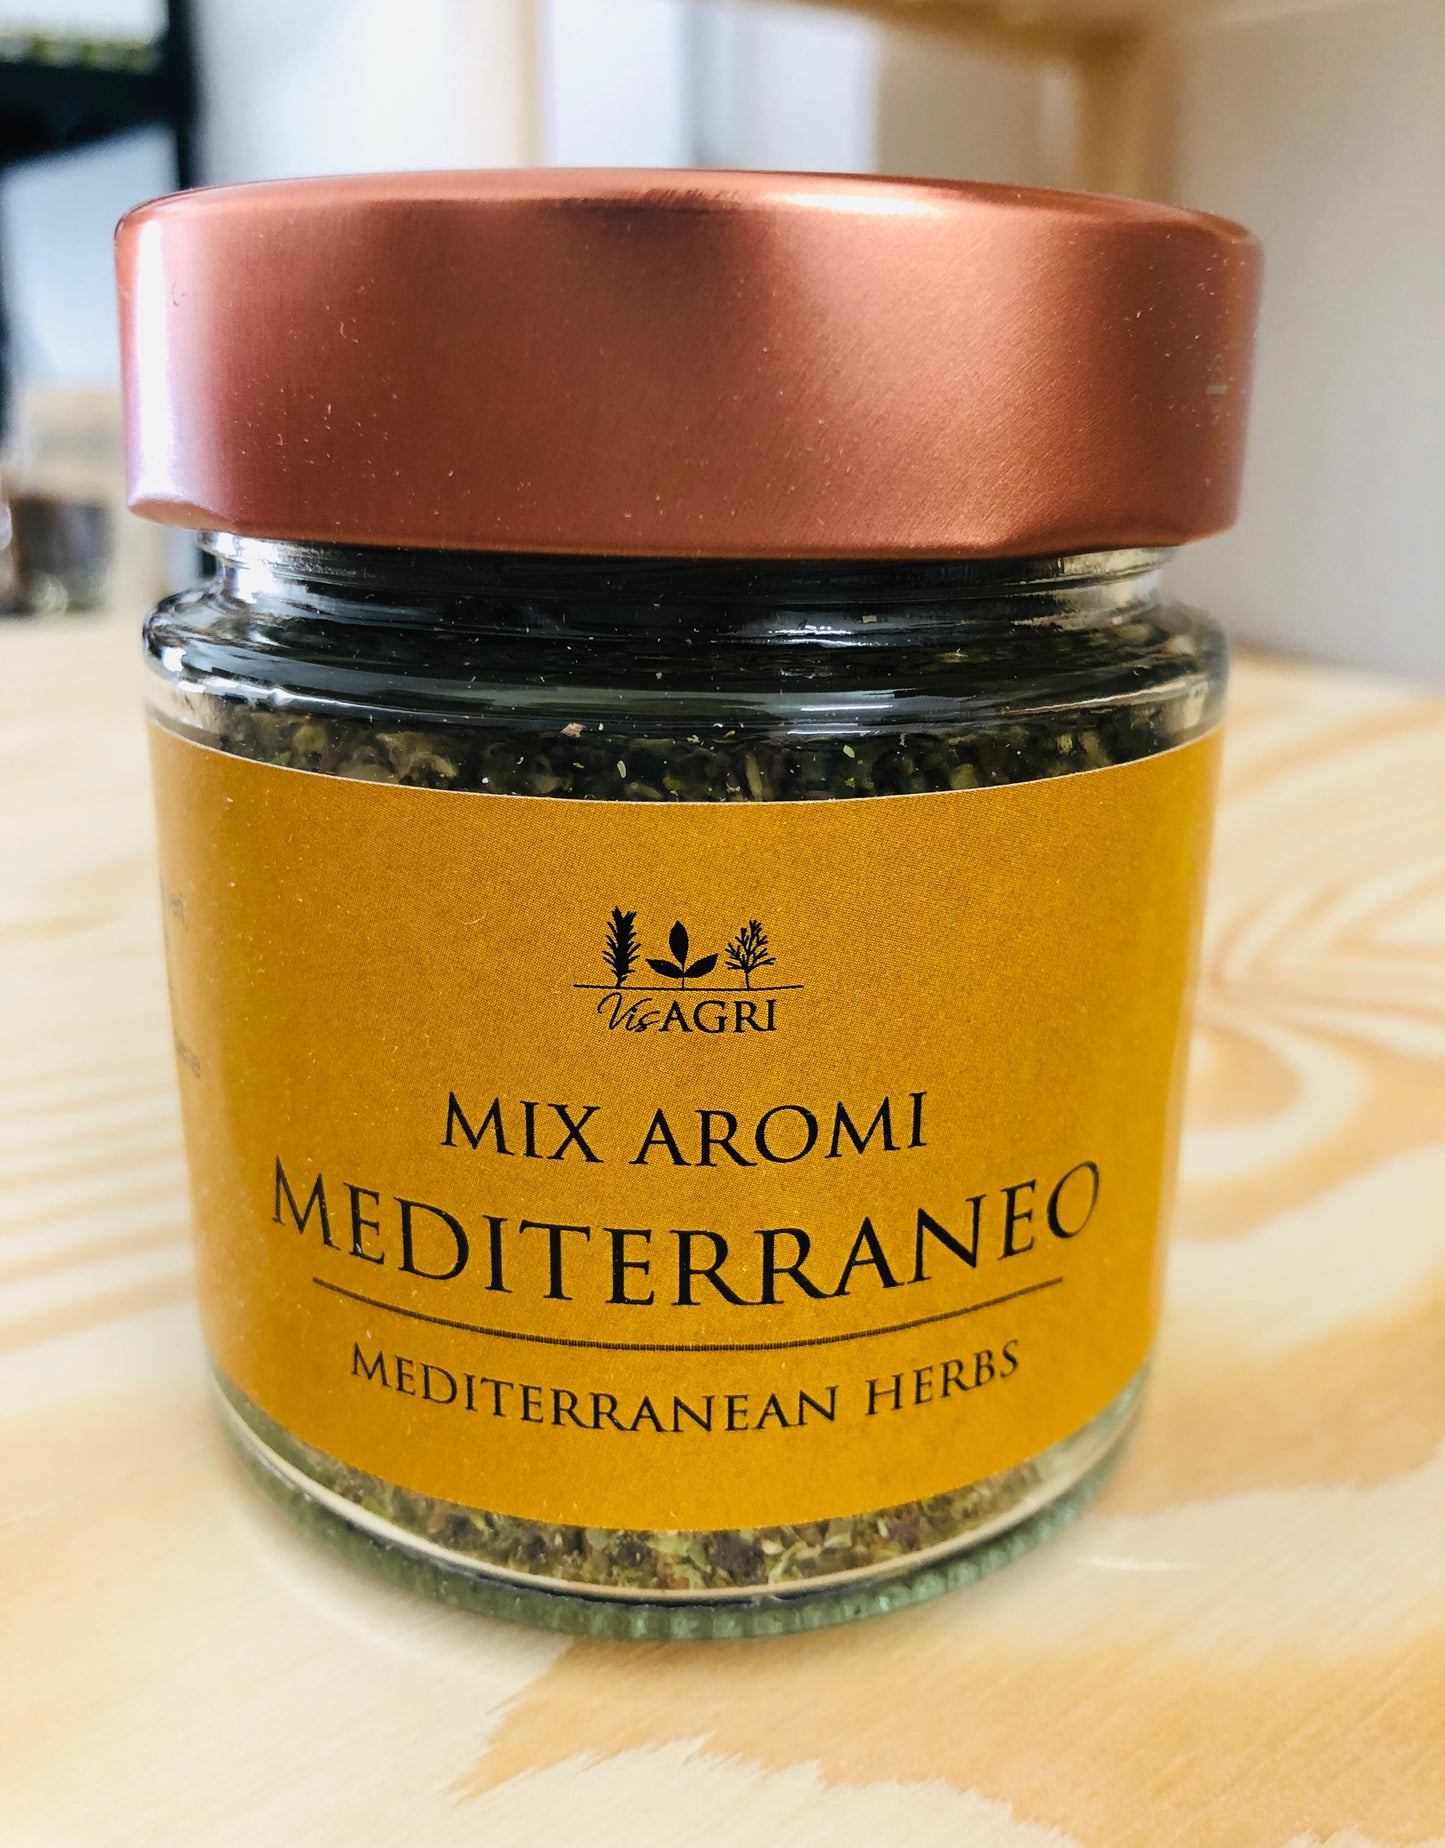 Aroma Mediterraneo 45 g - VisAgri